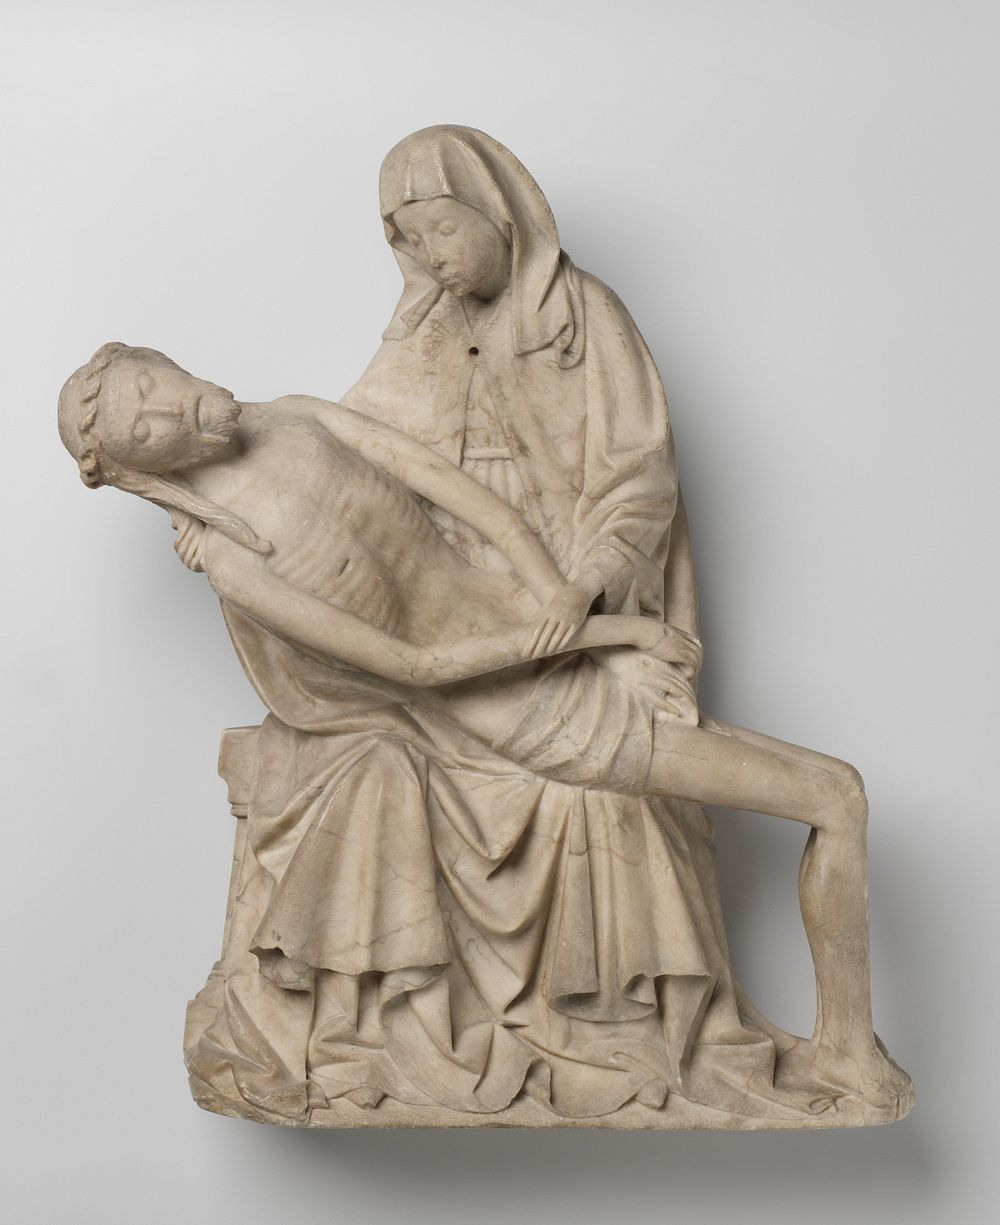 Pietà (c. 1450) by Master of Rimini